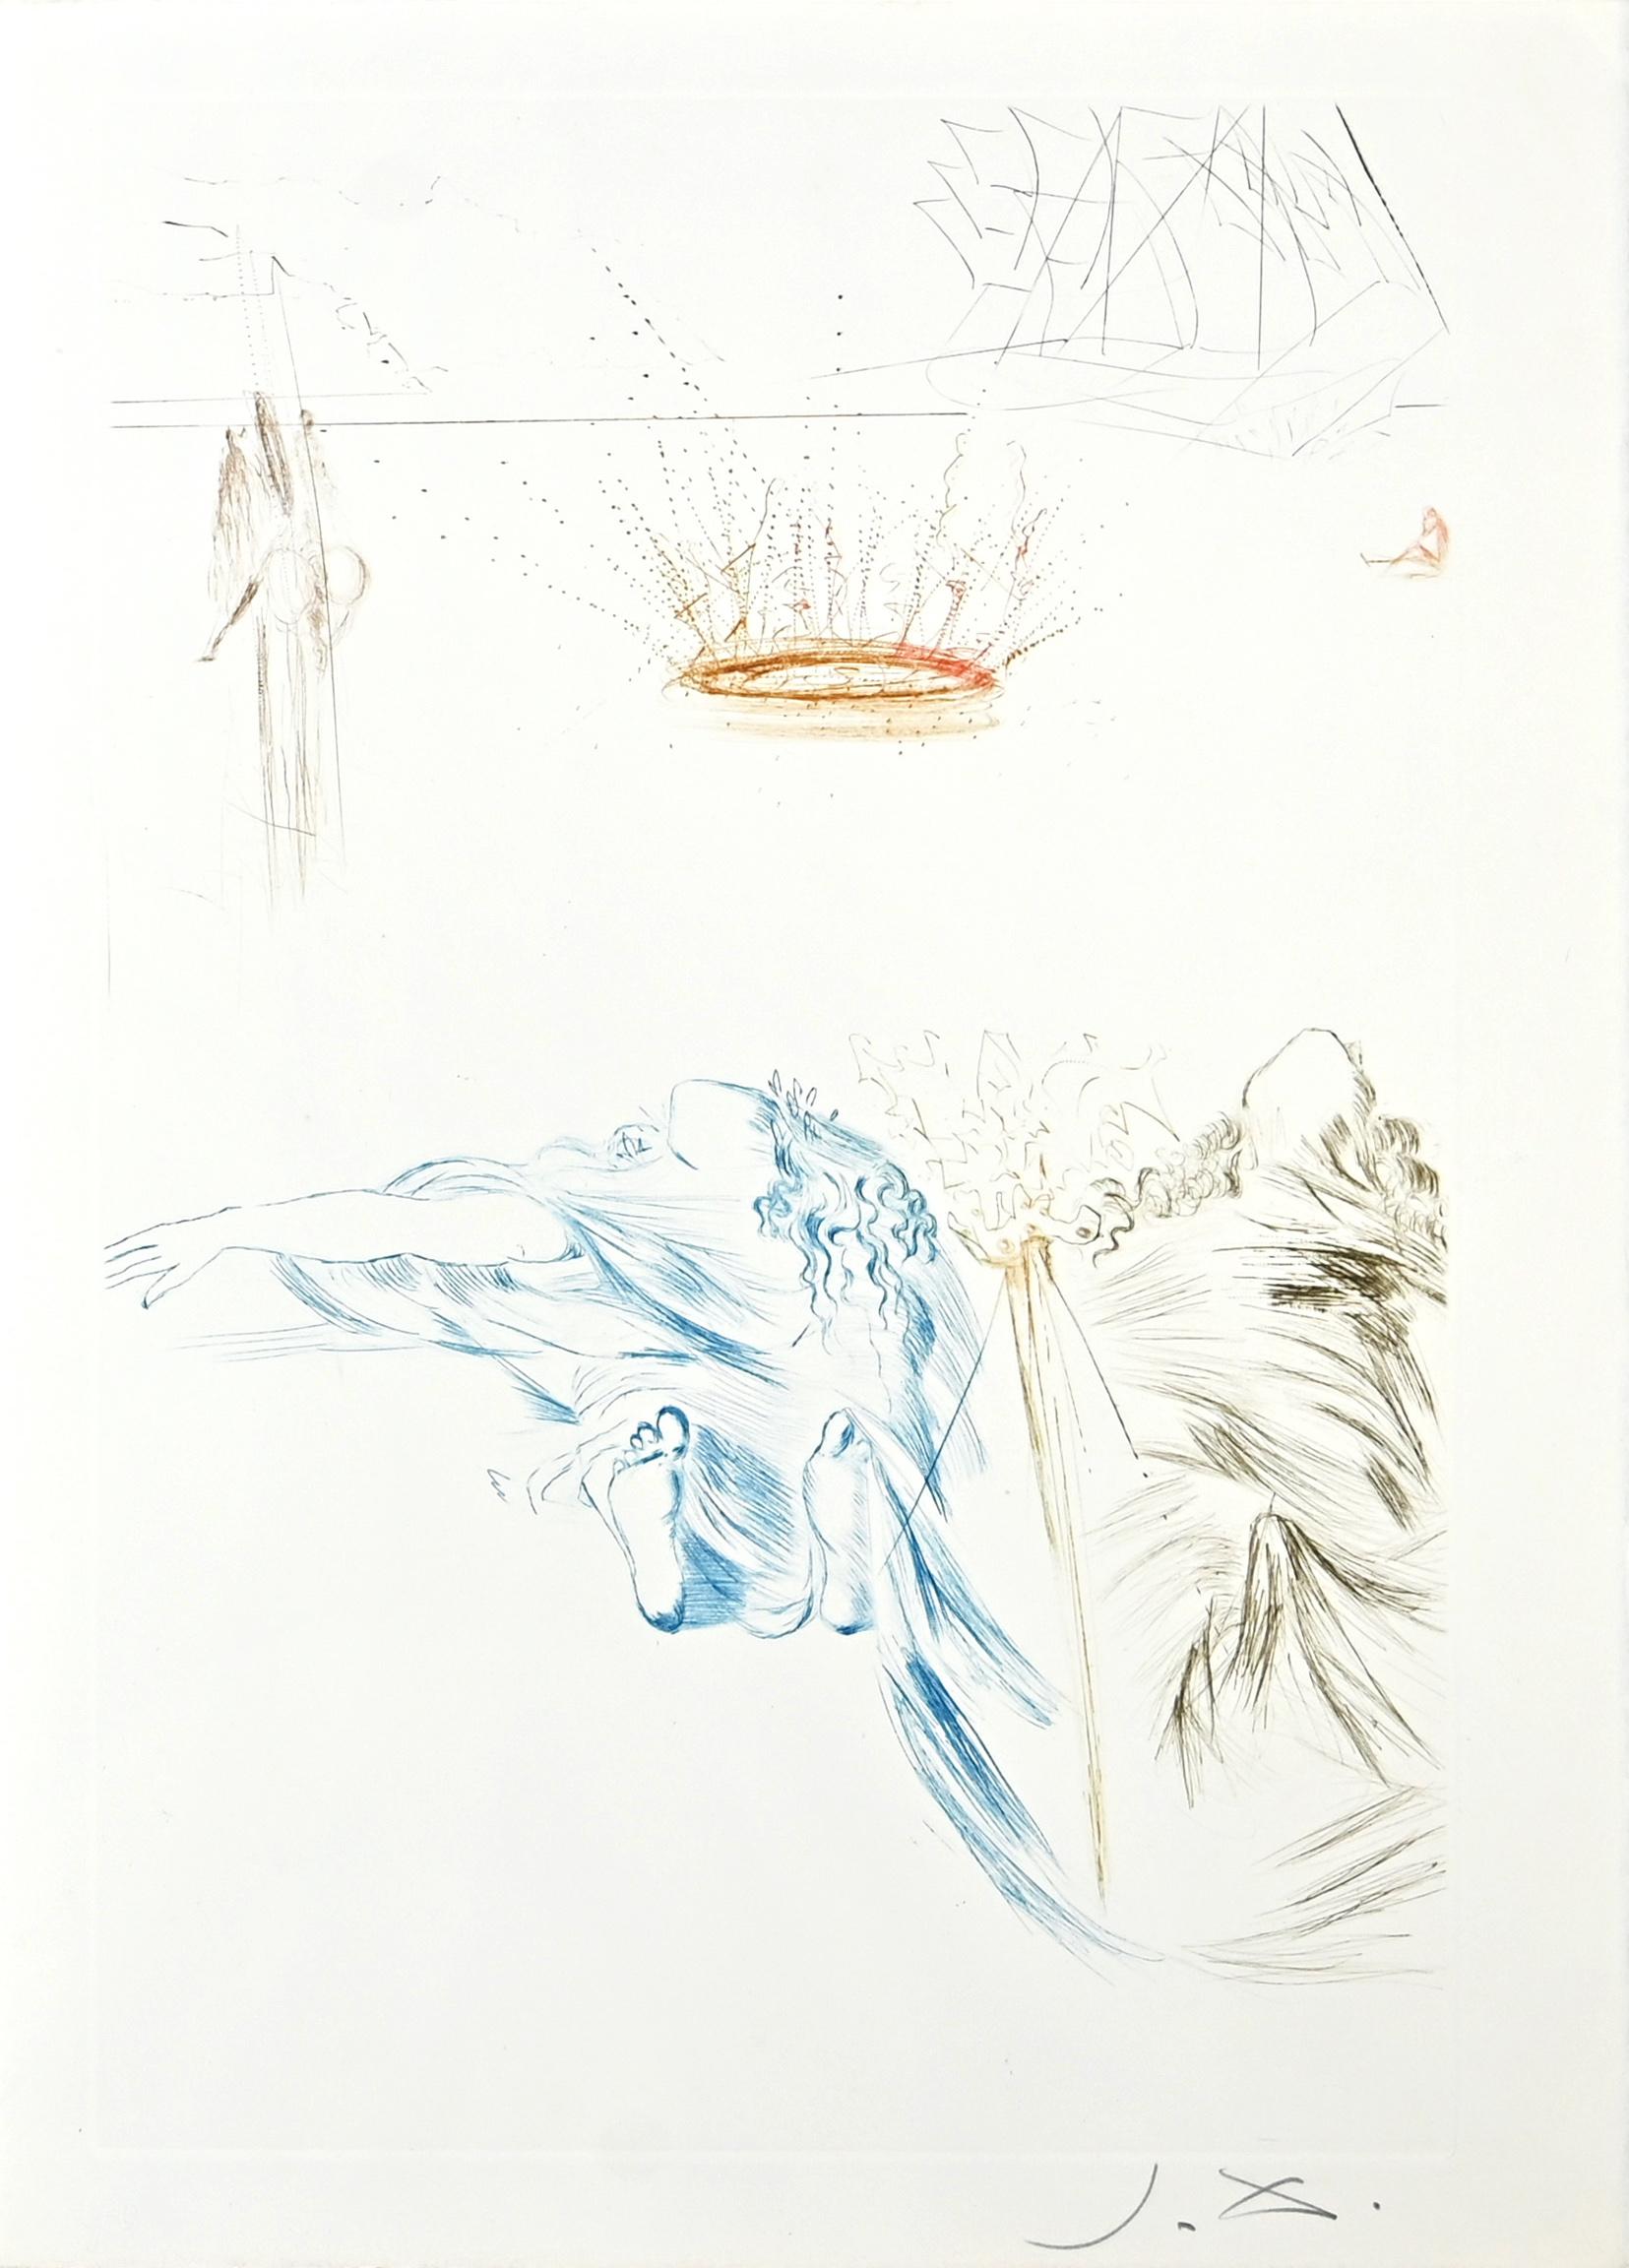 Figurative Print Salvador Dalí - Le Testament de Tristan - Pointe sèche et gravure attr. à S. Dalì - 1969